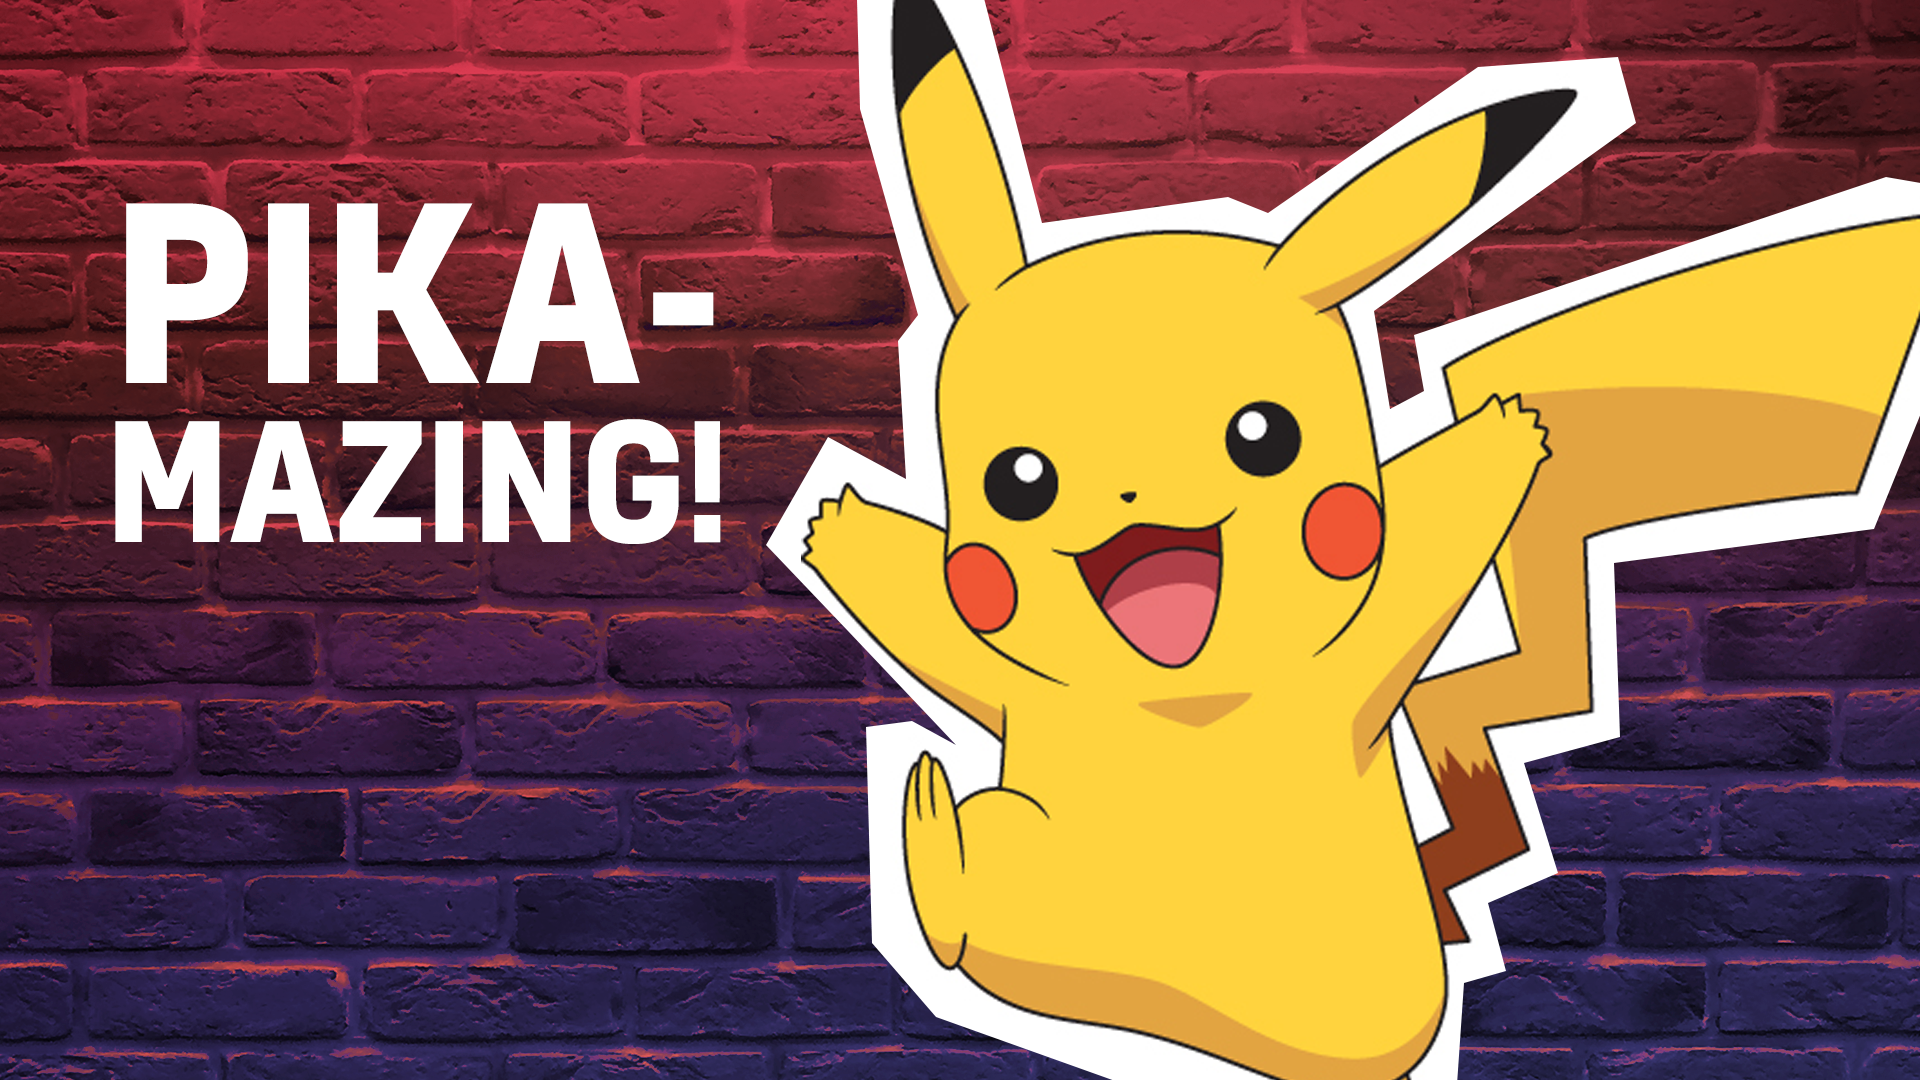 Pika-mazing! Like Pikachu and amazing!